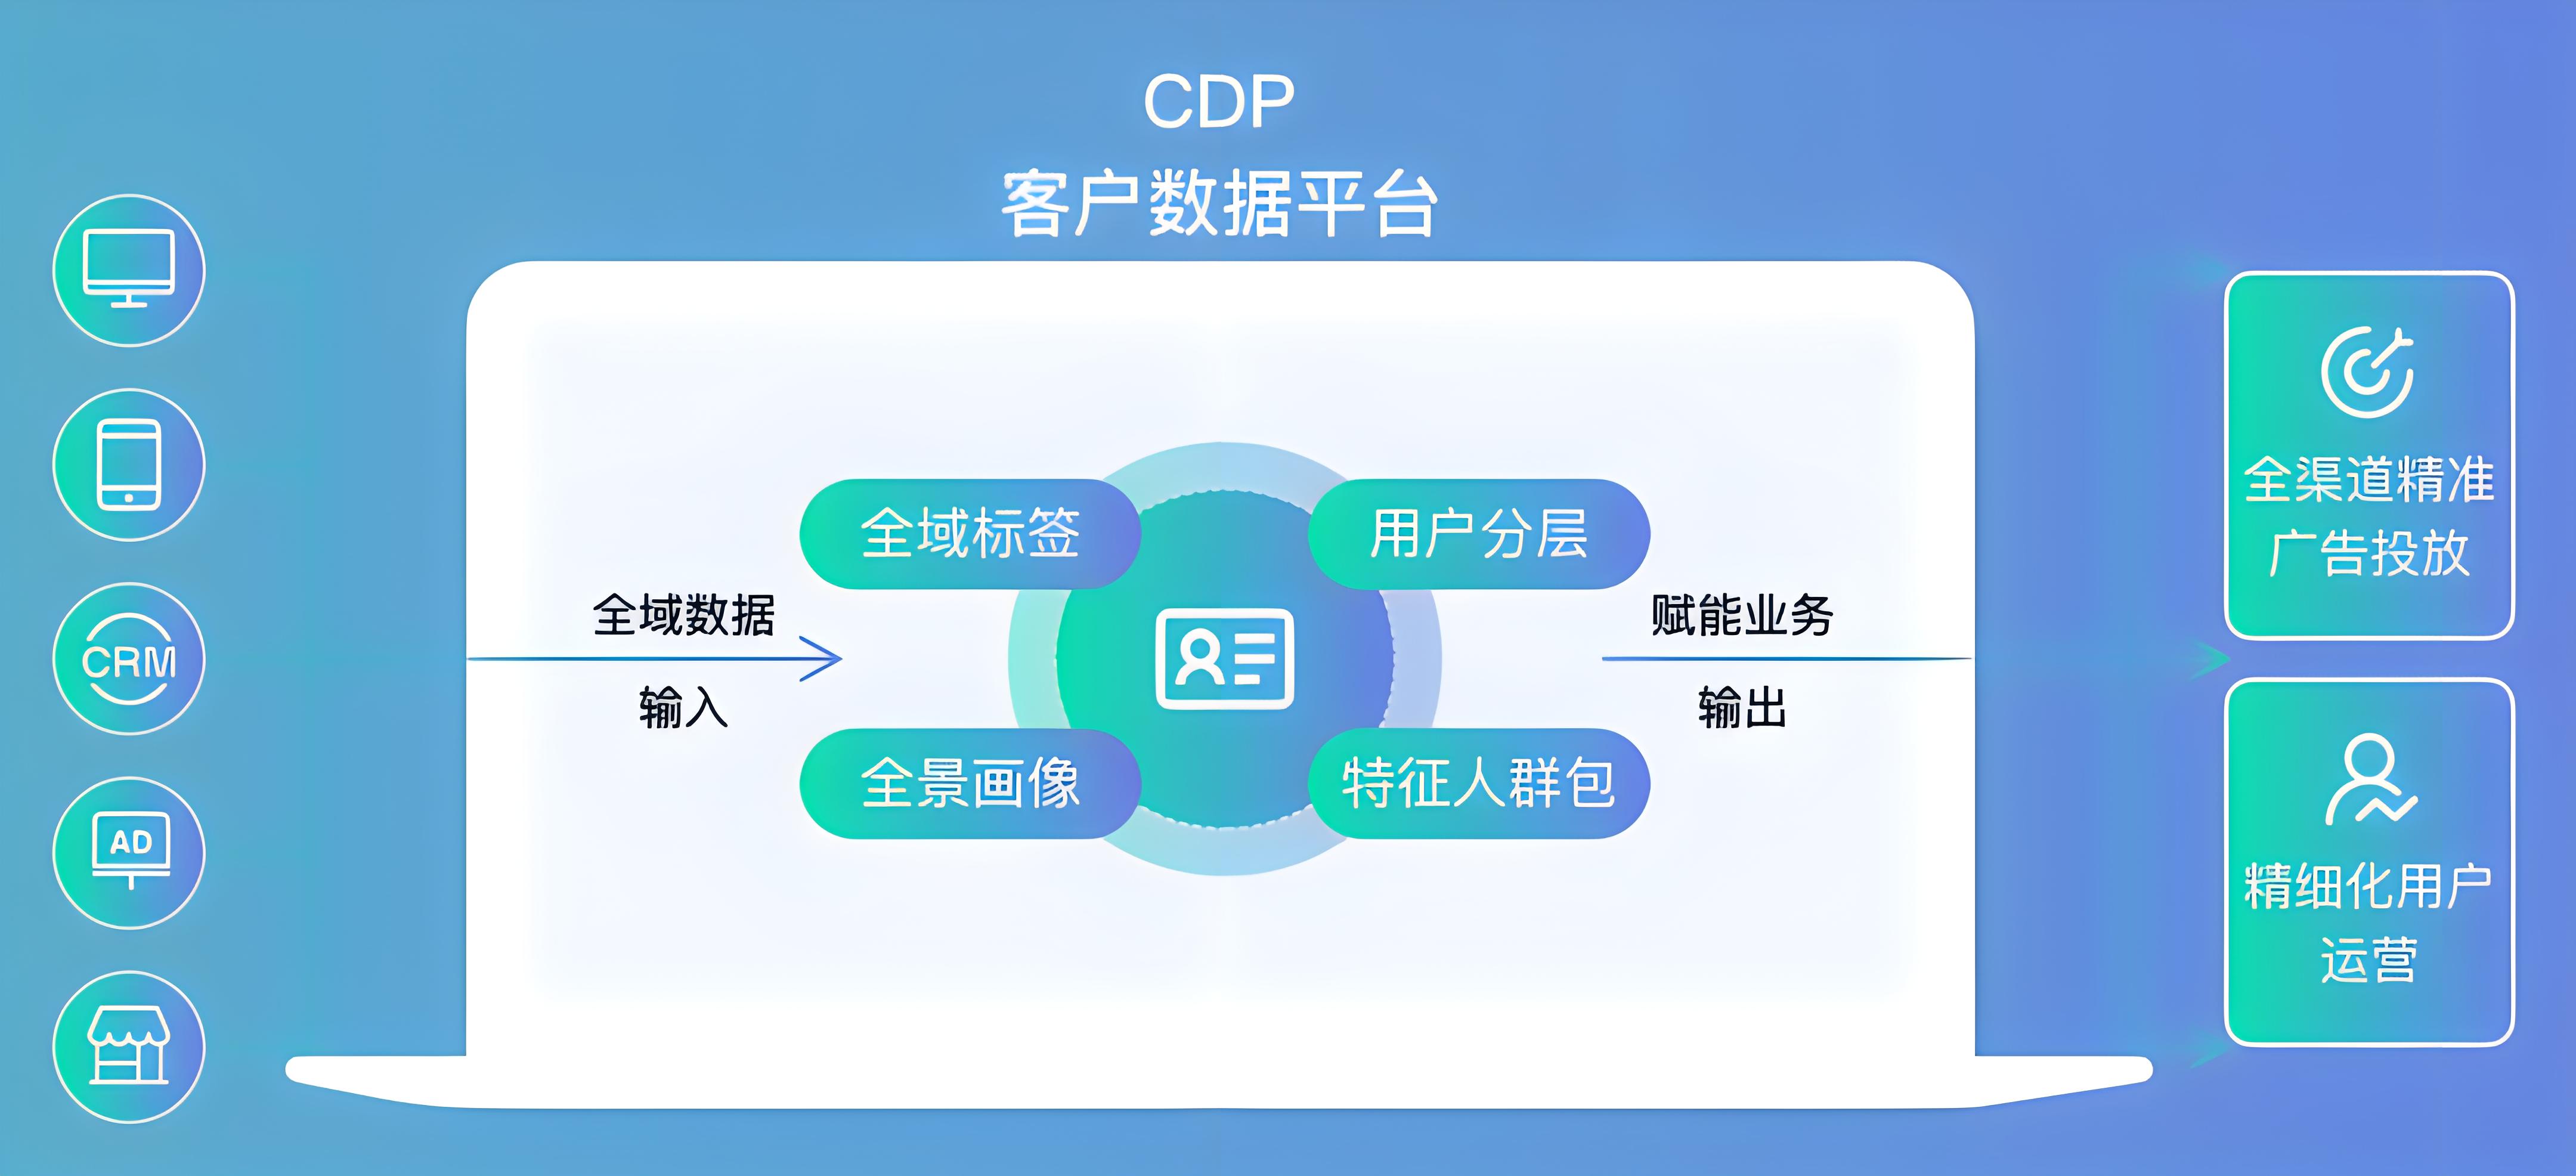 需求灵活定制的CDP平台是什么意思？